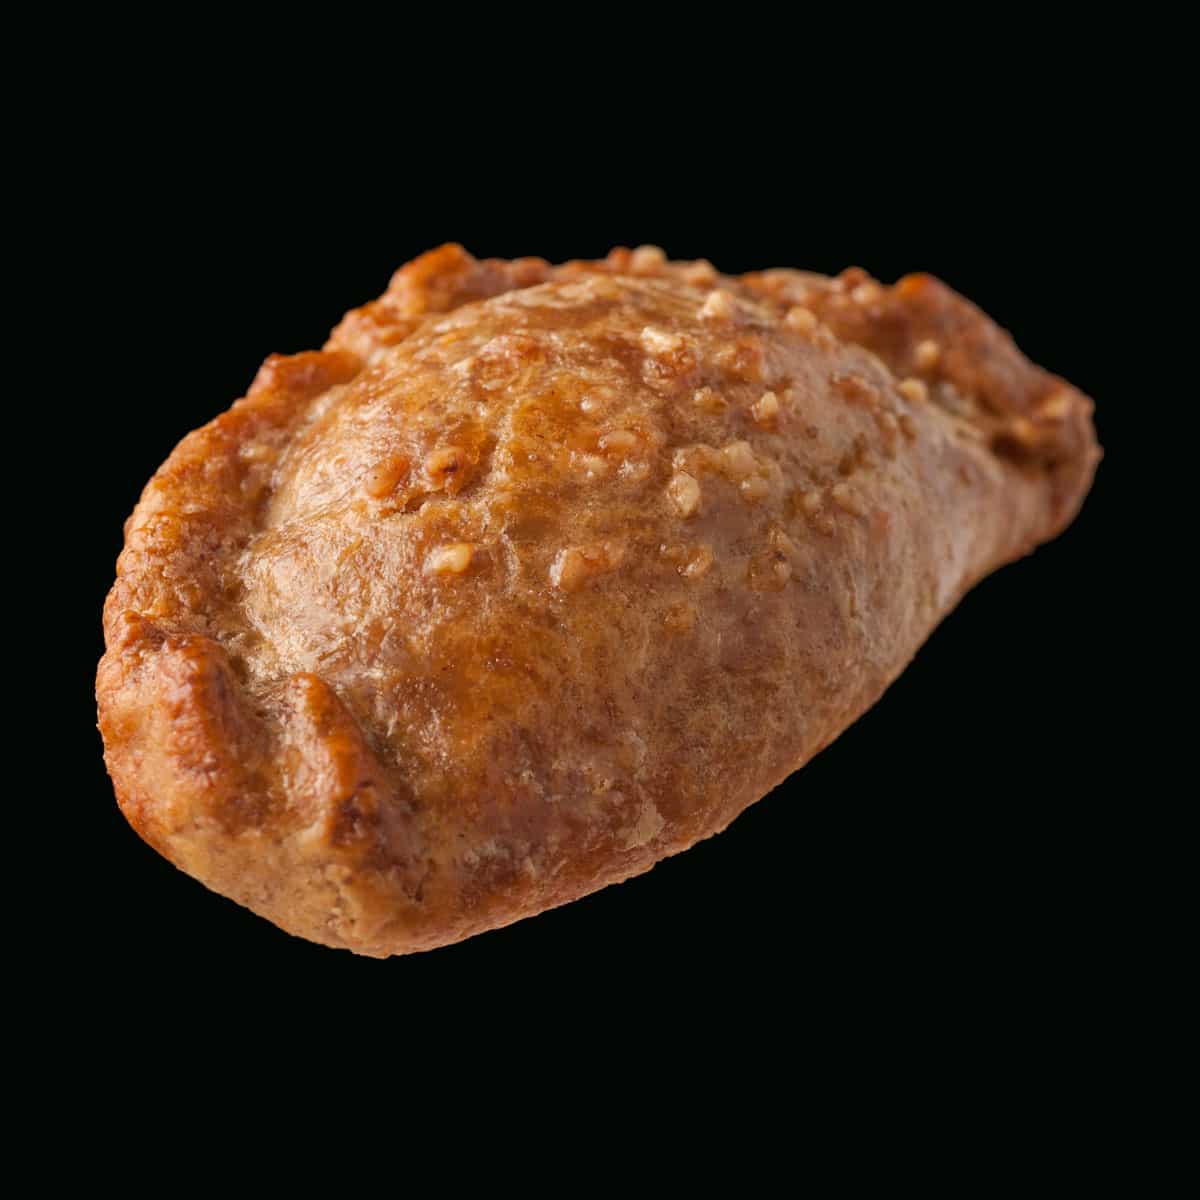 Tyropitaki - Kourou pie with tyropita (feta cheese) filling topped with hazelnut nibs